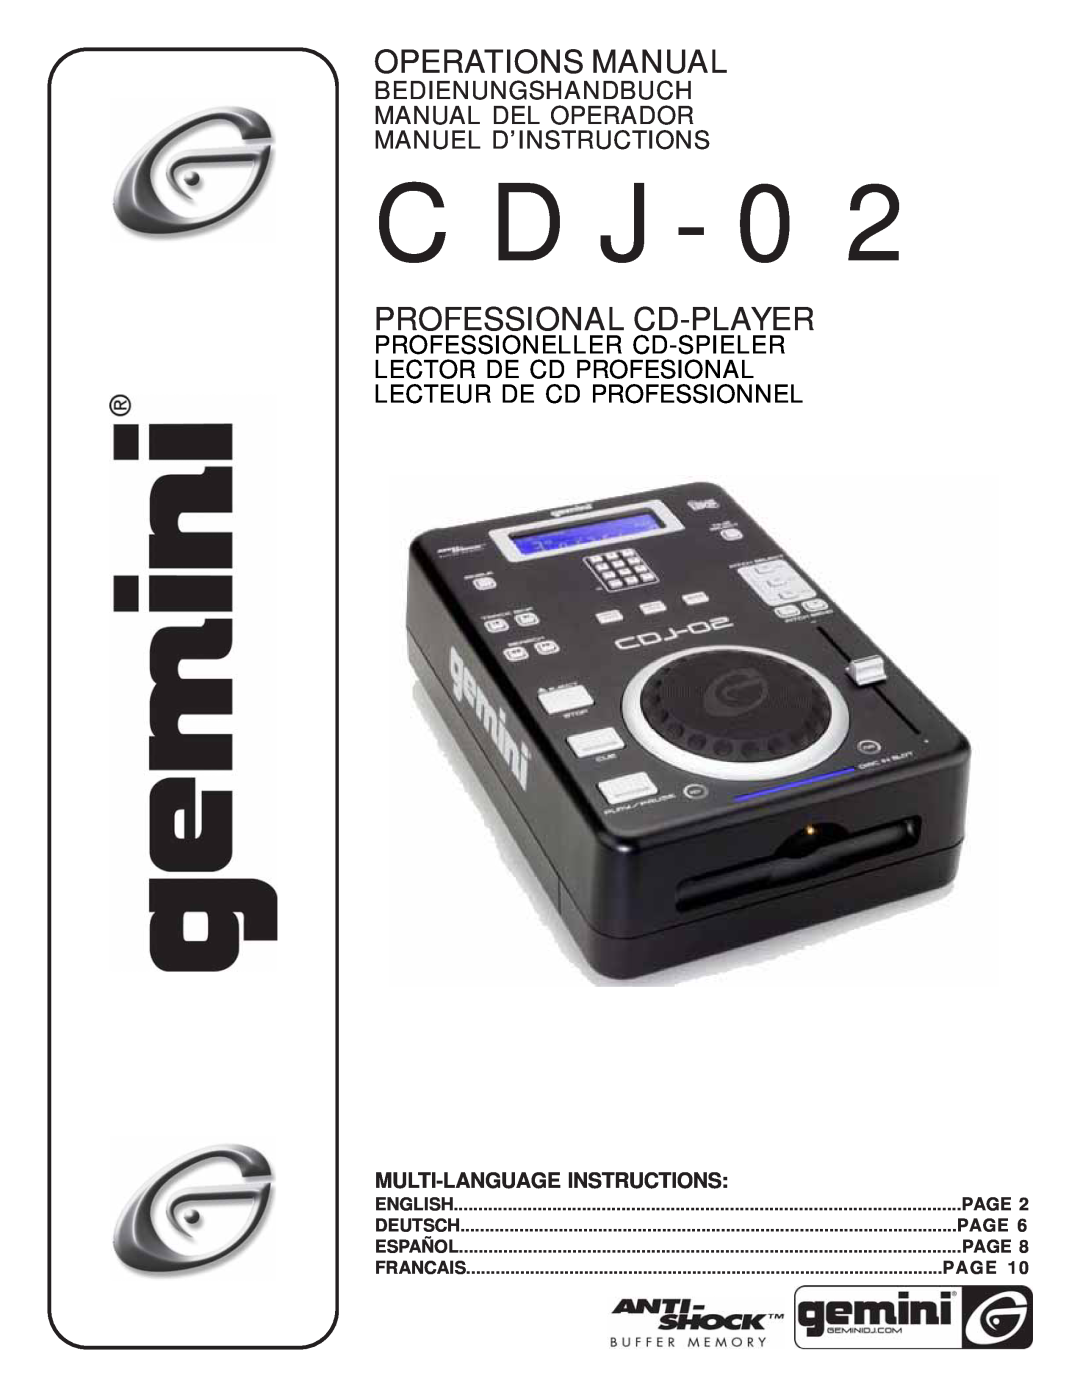 Gemini CDJ-02 manual Bedienungshandbuch Manual Del Operador Manuel D’Instructions, Lecteur De Cd Professionnel, English 